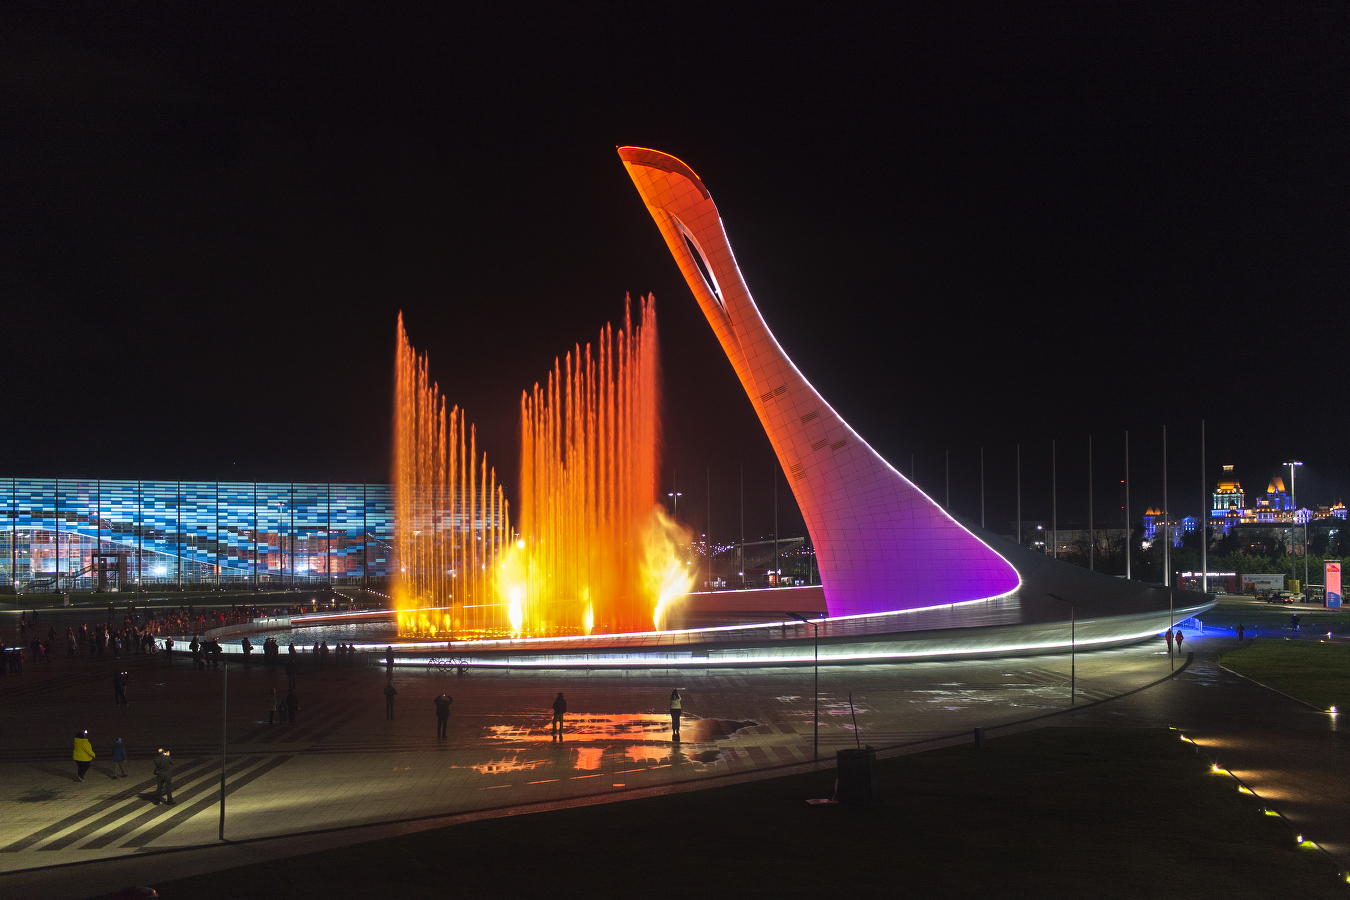 Поющие фонтаны Сочи Олимпийский парк